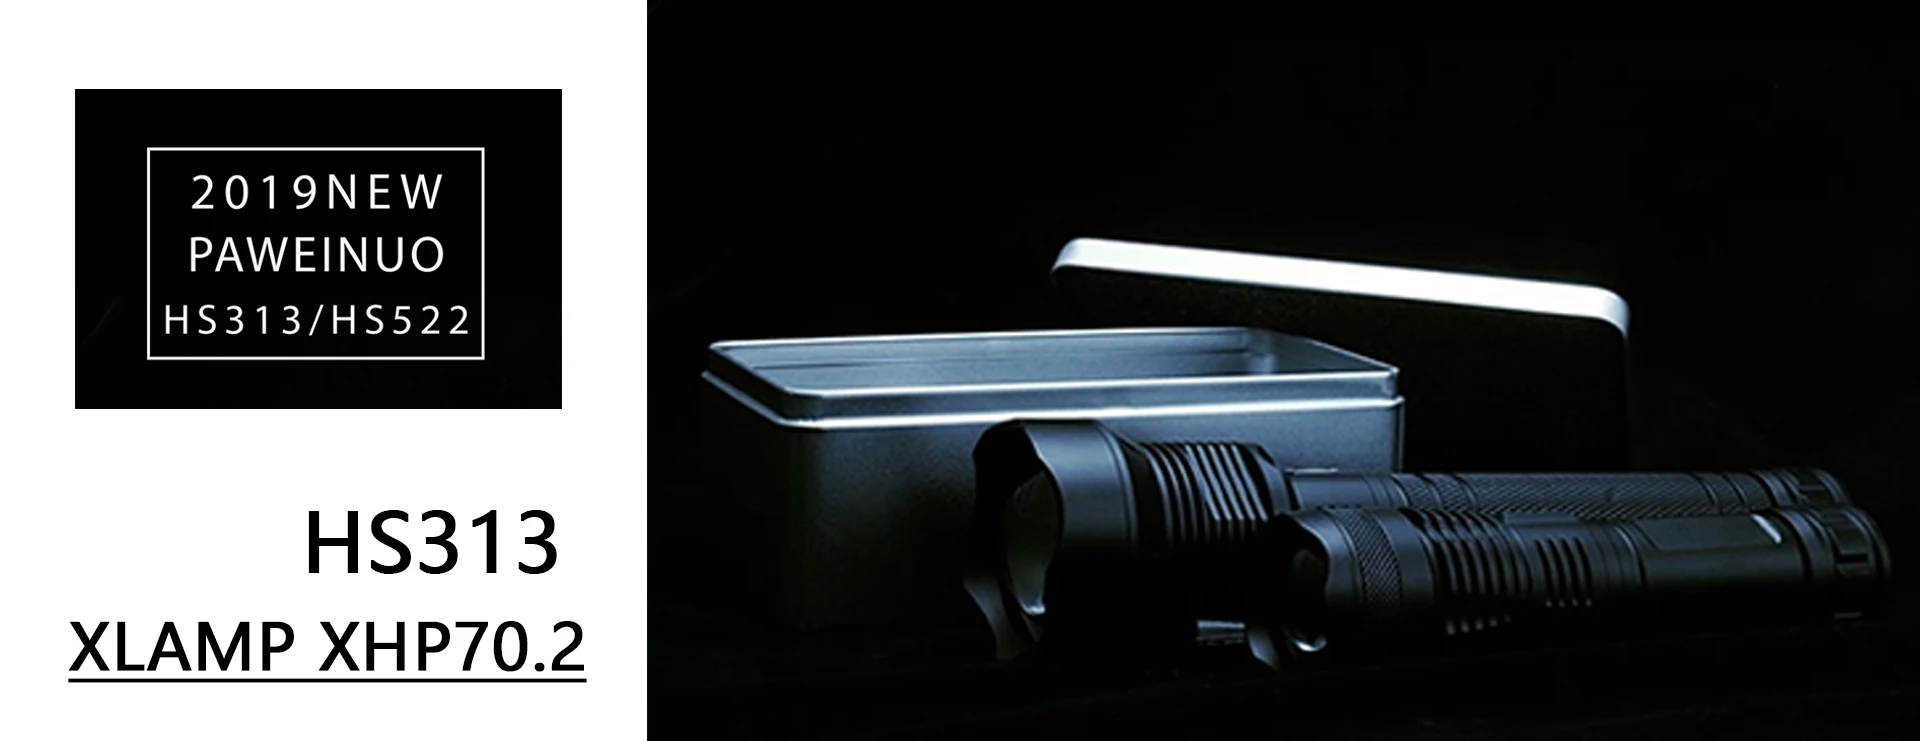 Тактический светодиодный фонарь высокой мощности охотничий фонарь Скаут Свет USB на 18650 перезаряжаемый аккумулятор 2 м водонепроницаемый Реальные люмены 1200 FLASHLIGHT TORCH 2 года гарантии